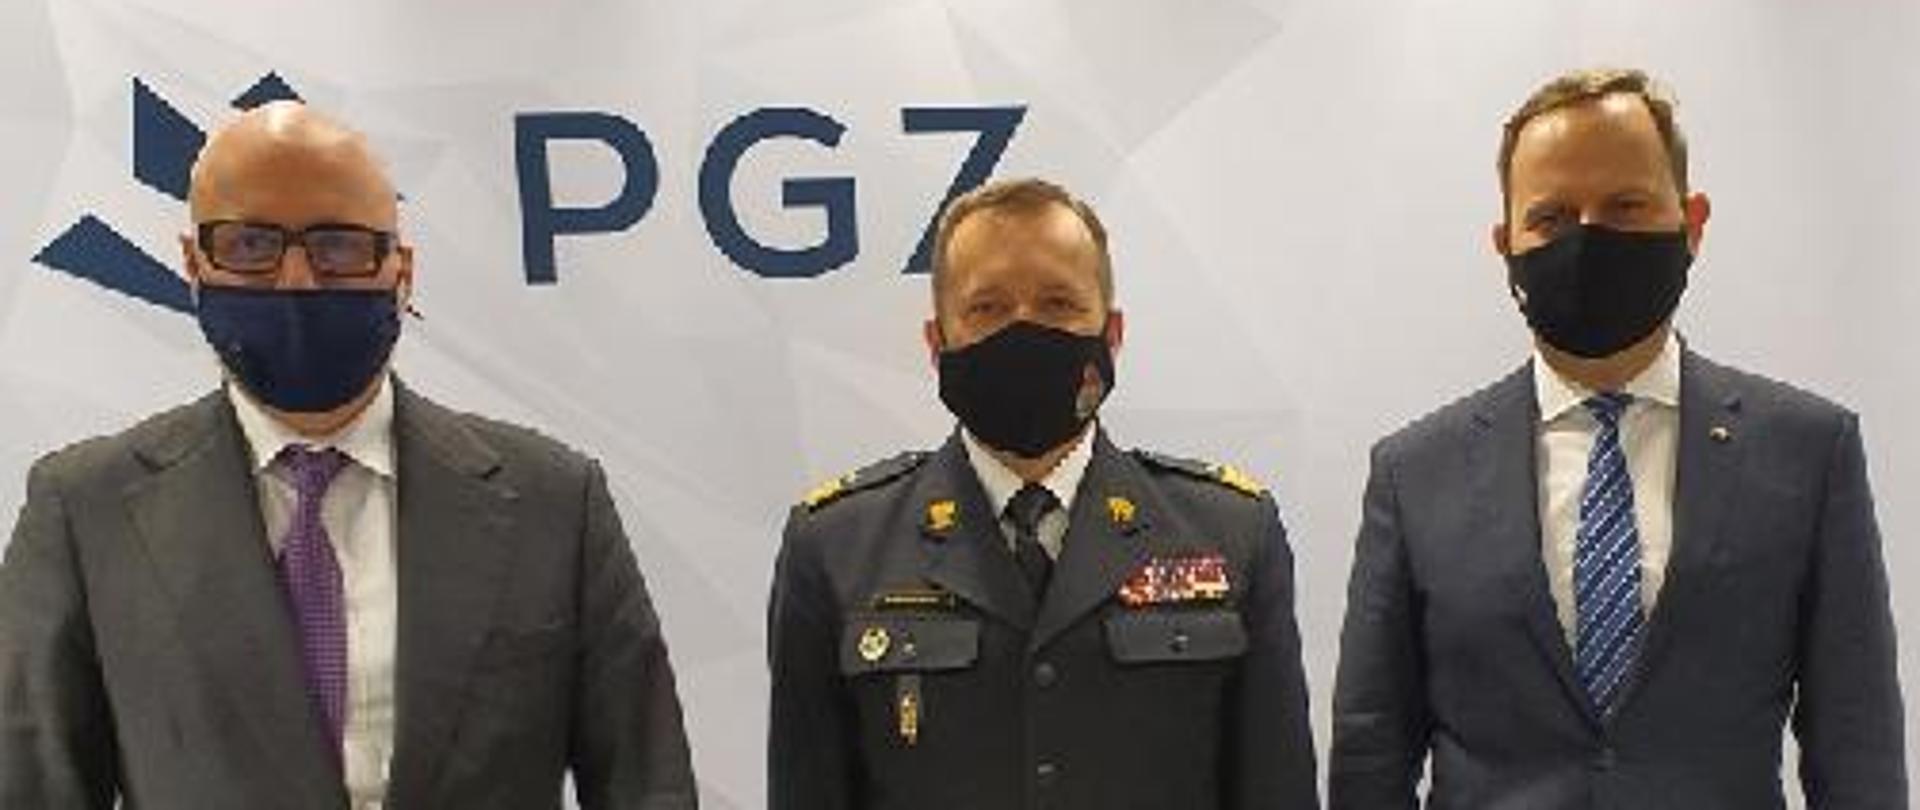 Zastępca komendanta głównego Państwowej Straży Pożarnej w towarzystwie dwóch przedstawicieli przemysłu zbrojeniowego, w tle ściana z logiem Polskiej Grupy Zbrojeniowej